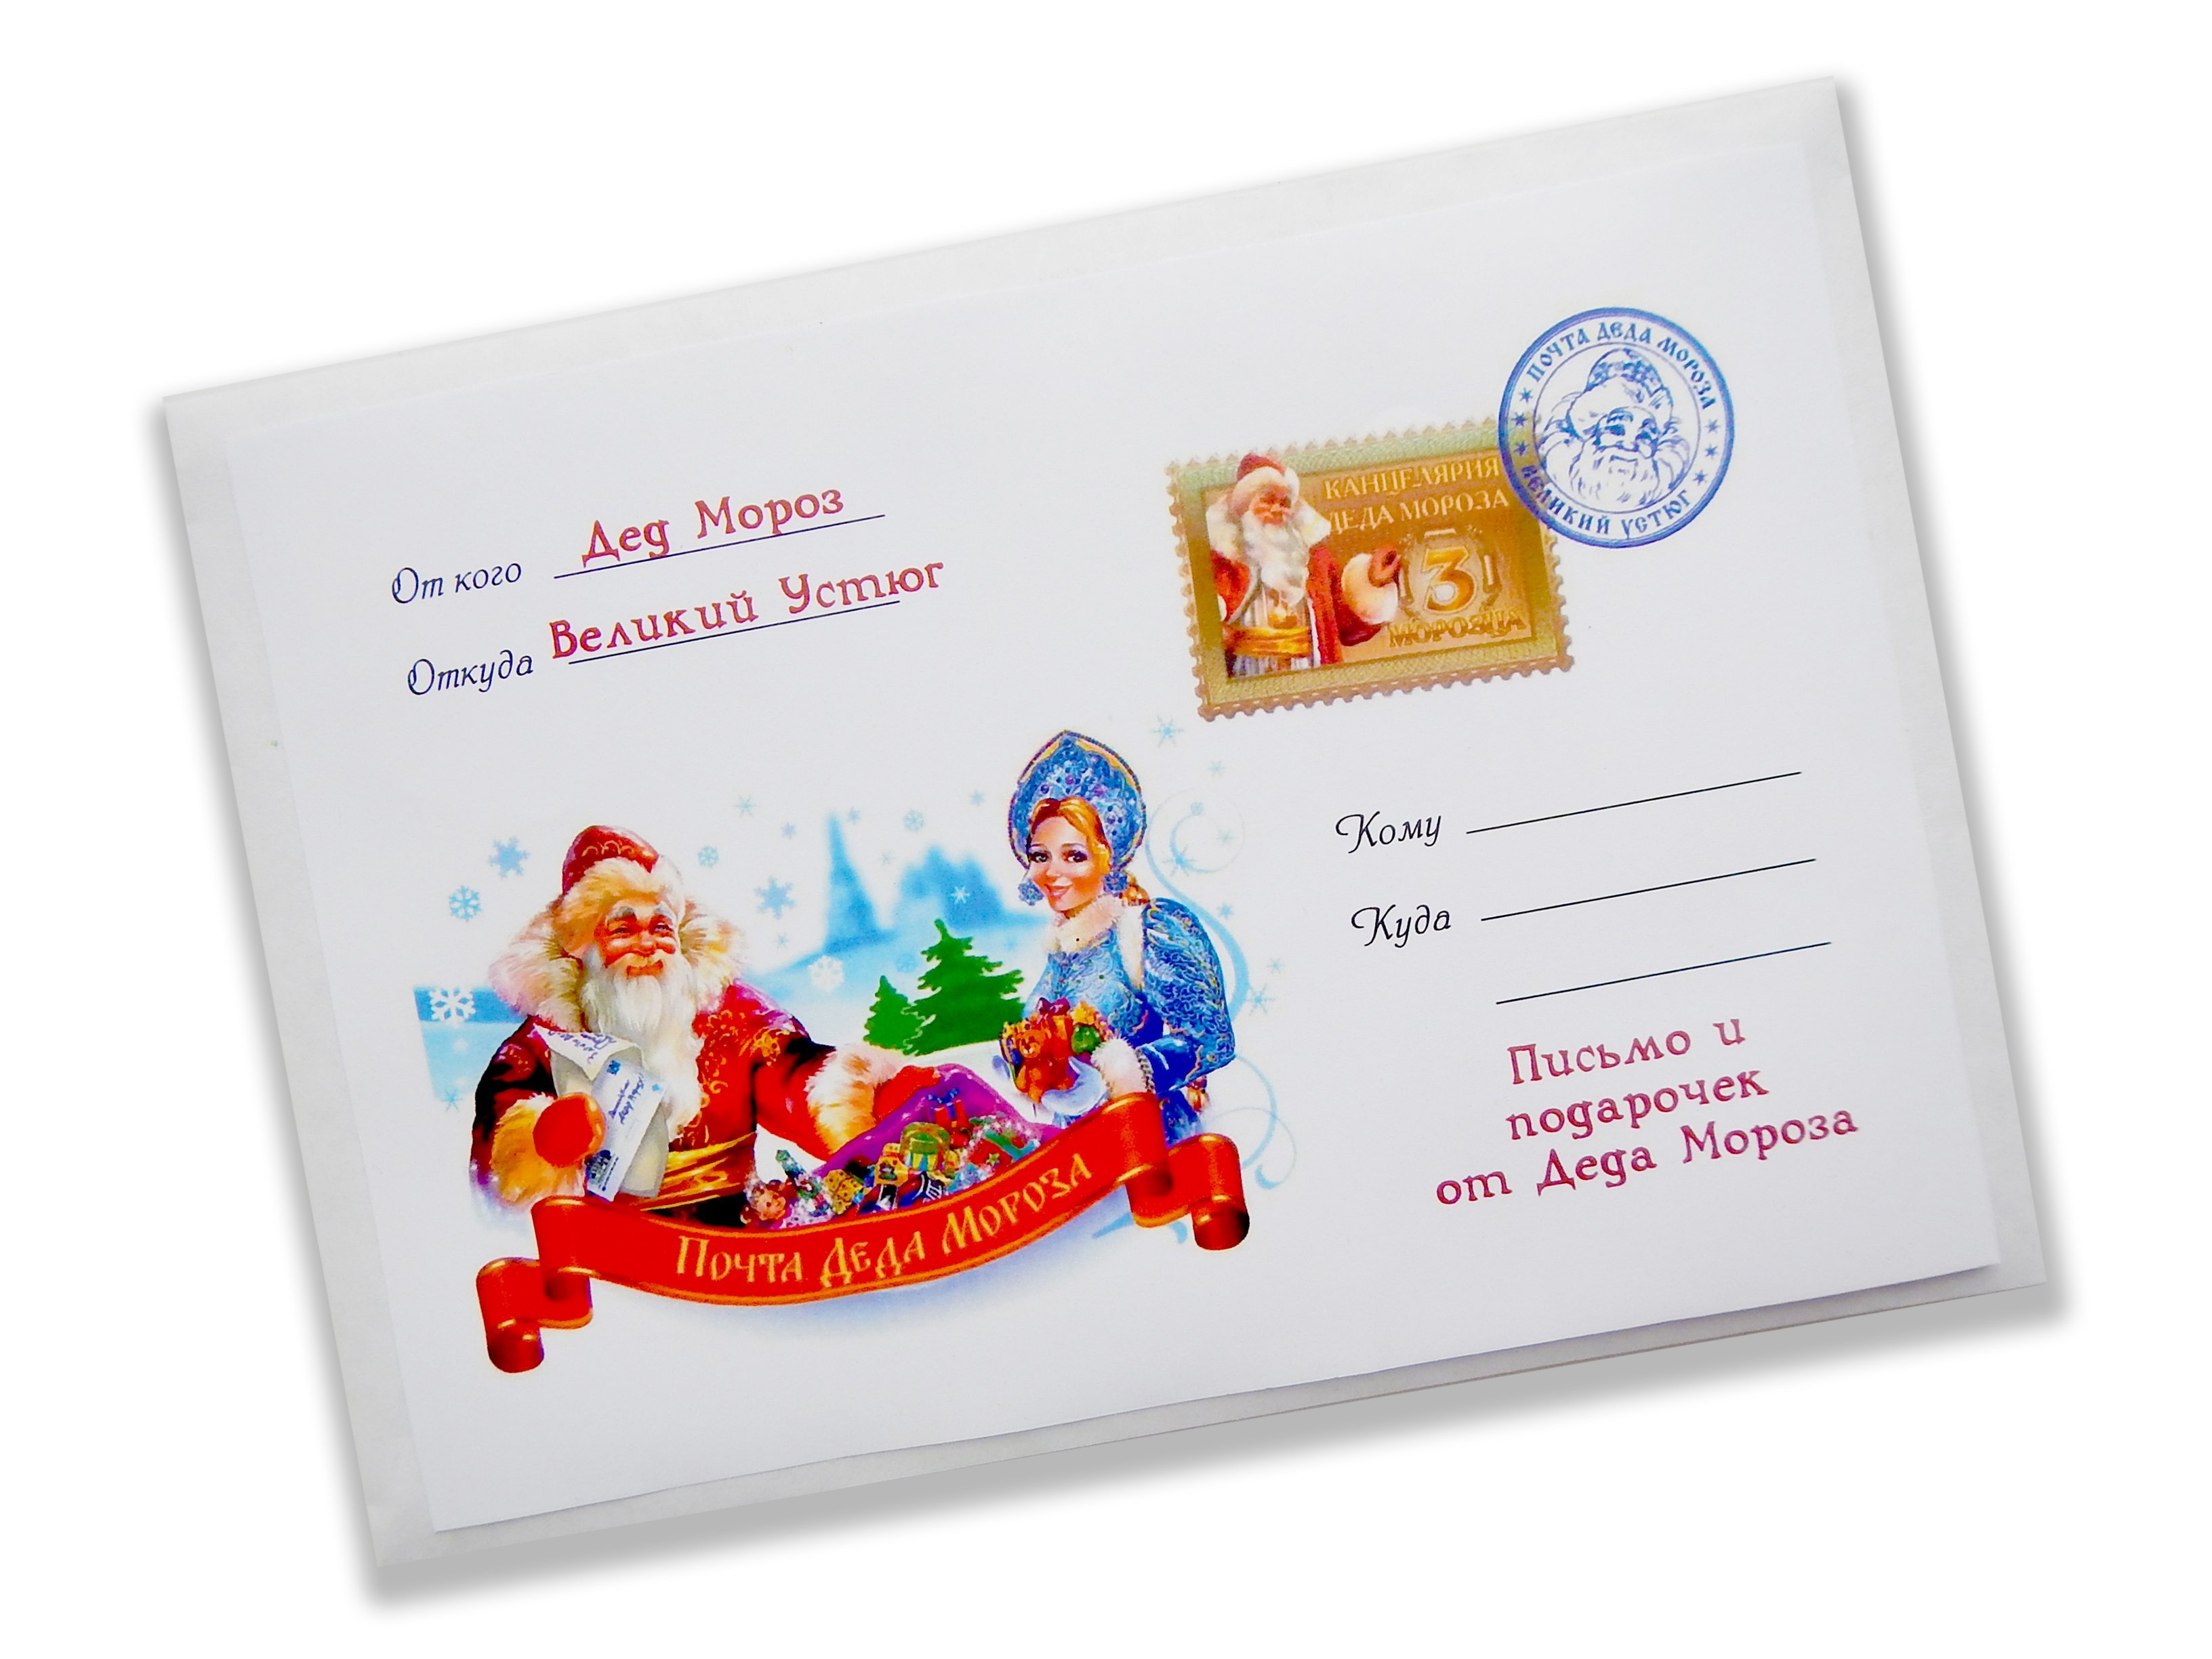 Подписать подарки детям. Письмо от Деда Мороза конверт. Котверт отд Деда Мороза. Письмо от Деда Мороза конвер. Письмо от Деда морозаконыерт.